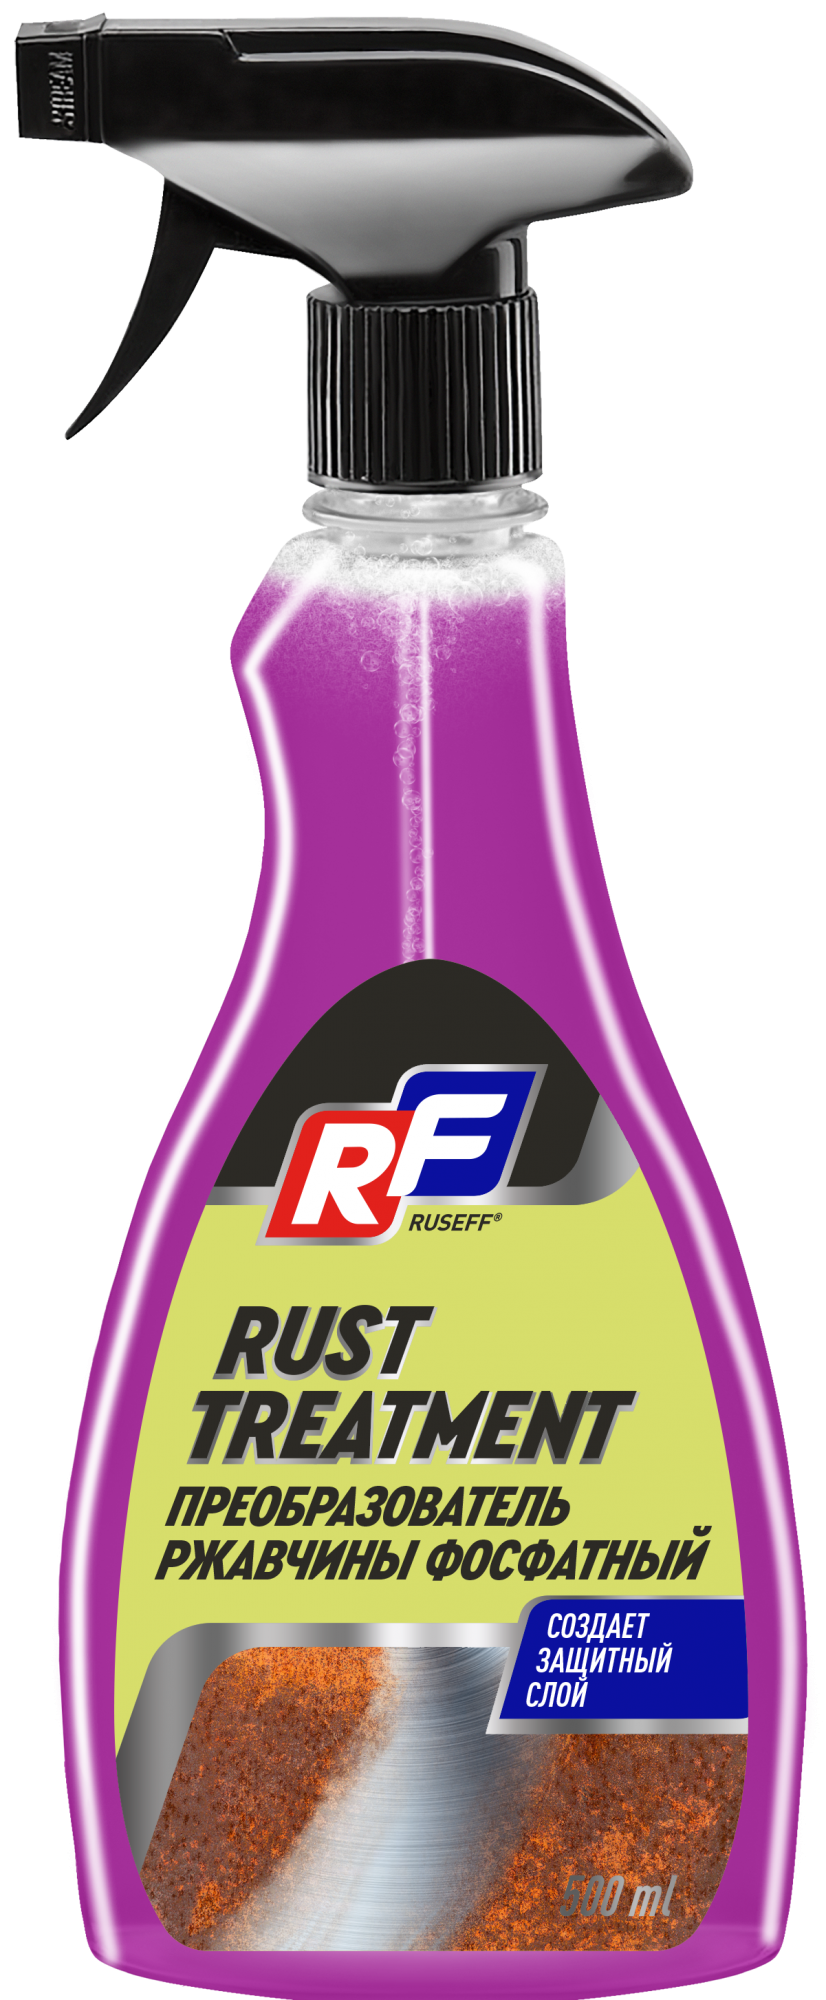 Rust treatment преобразователь ржавчины фосфатный отзывы (120) фото